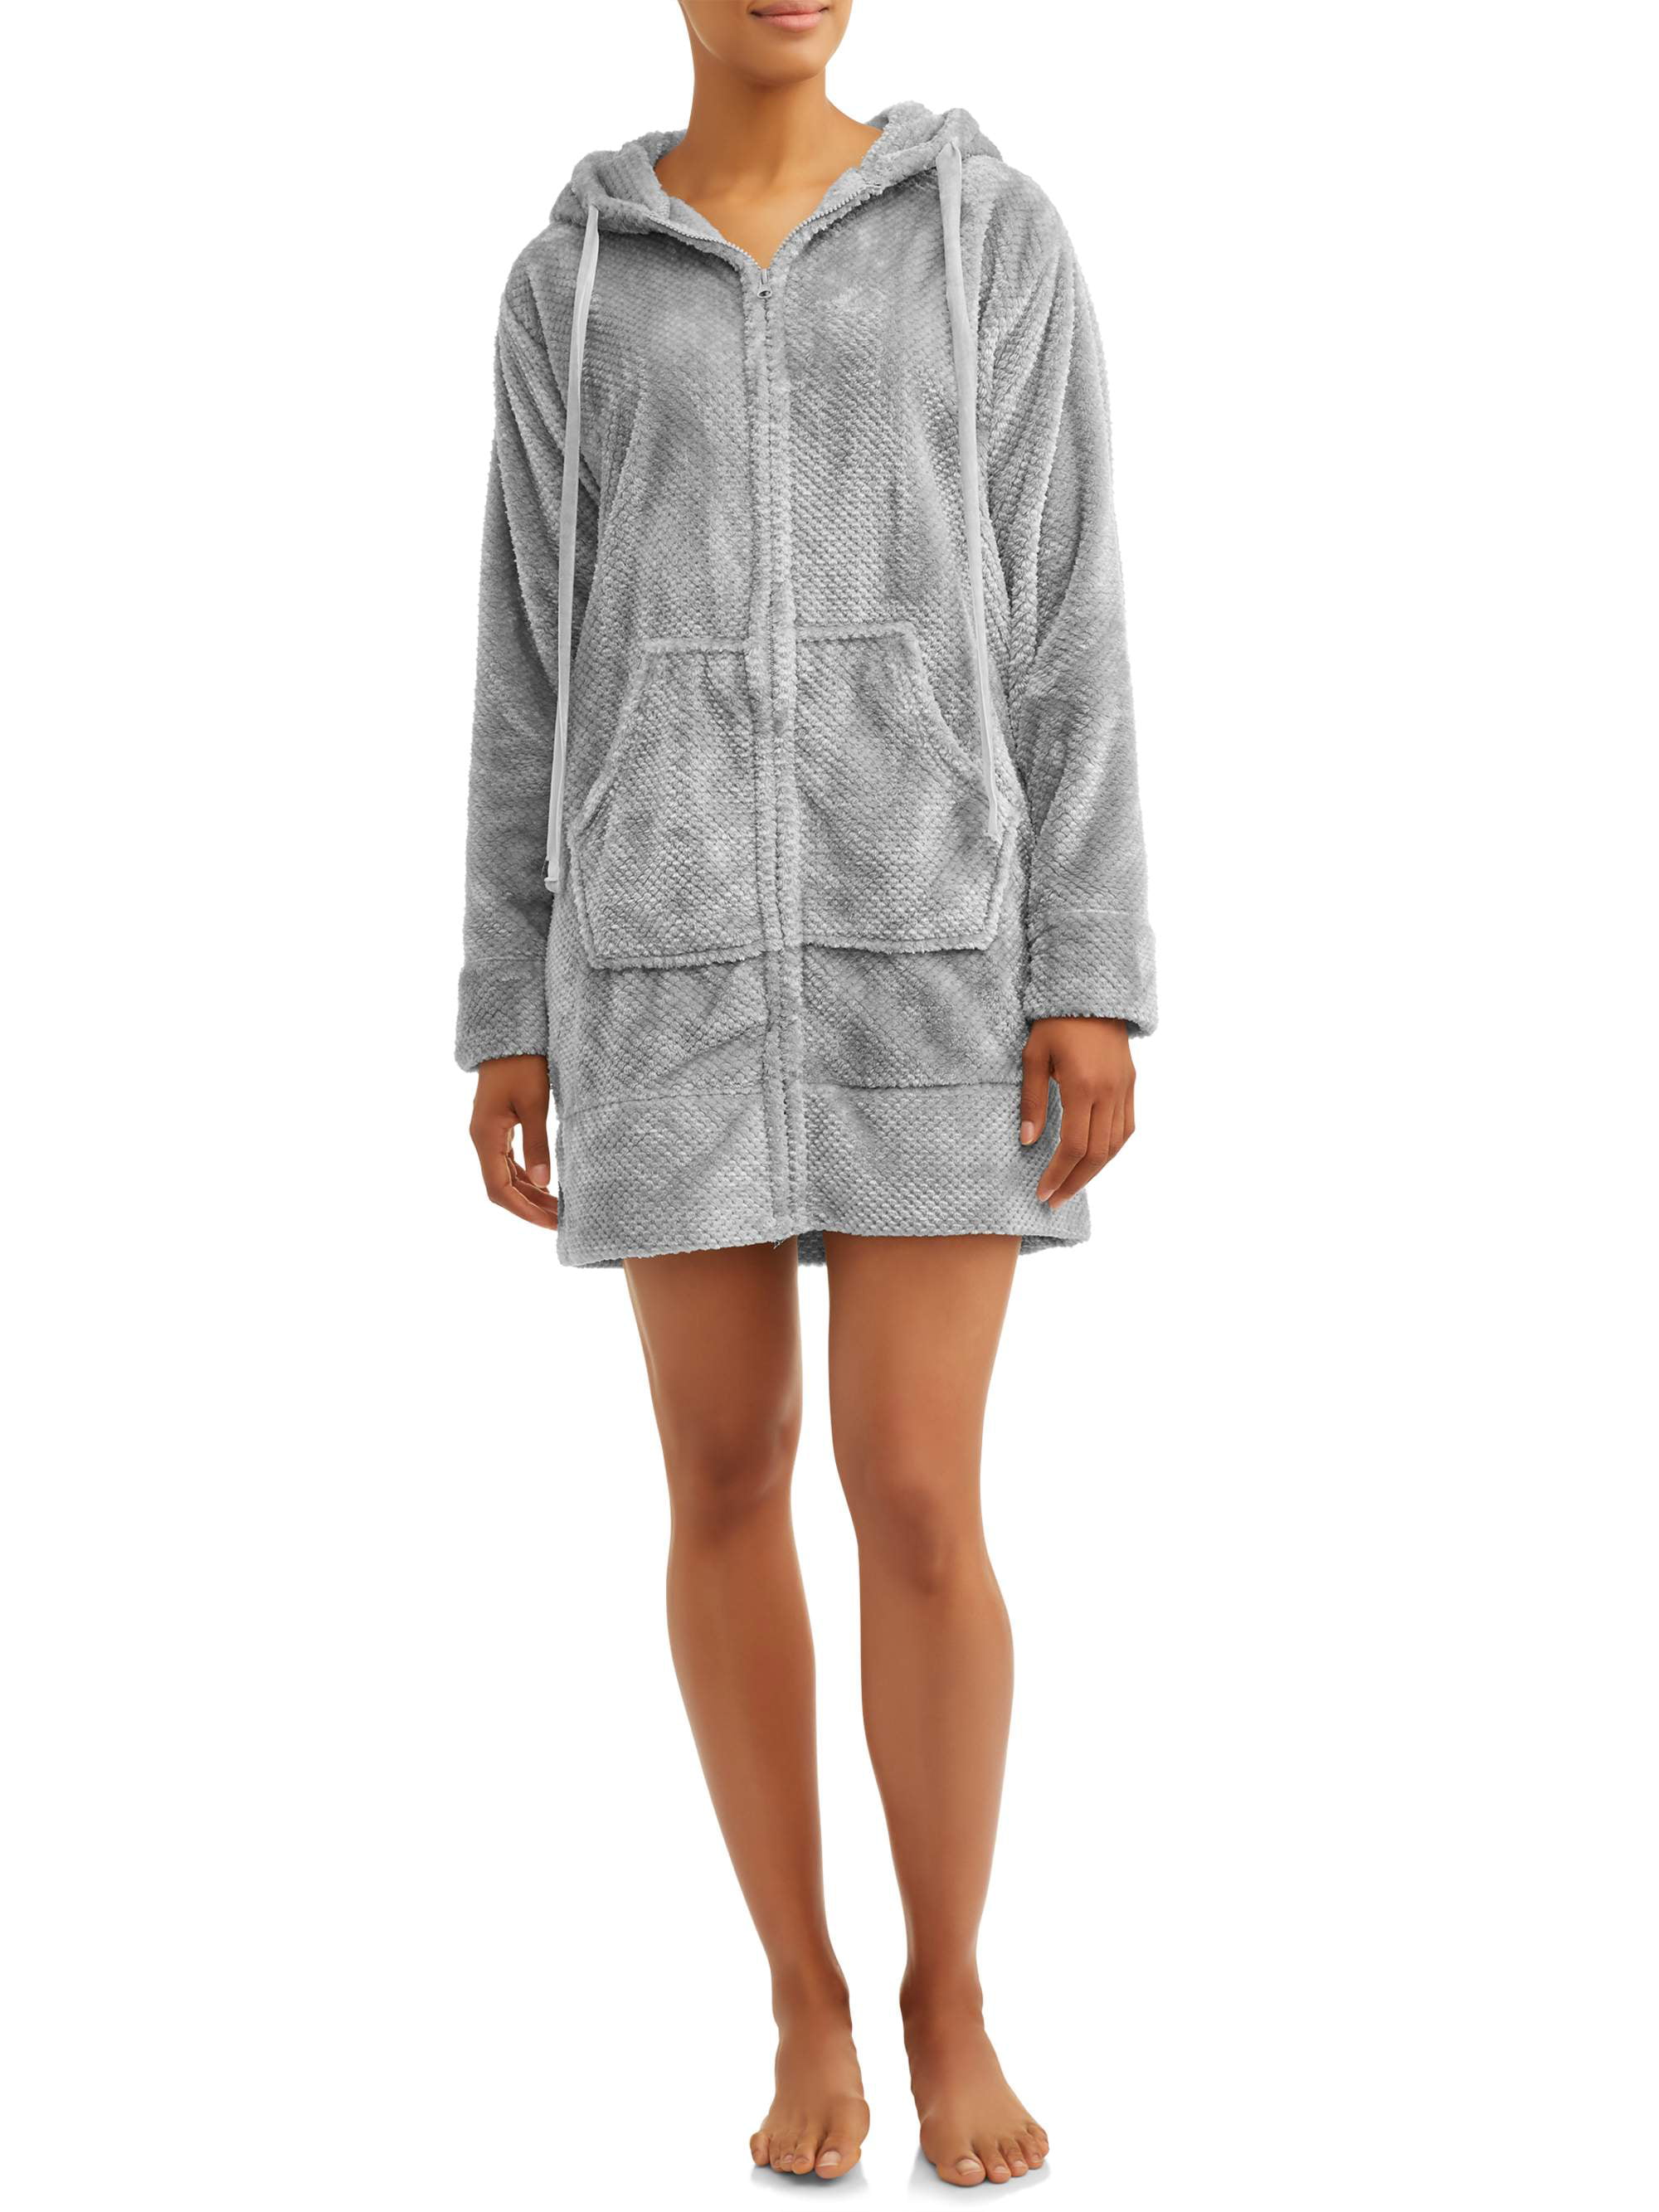 Cervantes Women's Jacquard Hooded Velvet Zippered Lounge Robe - Walmart.com